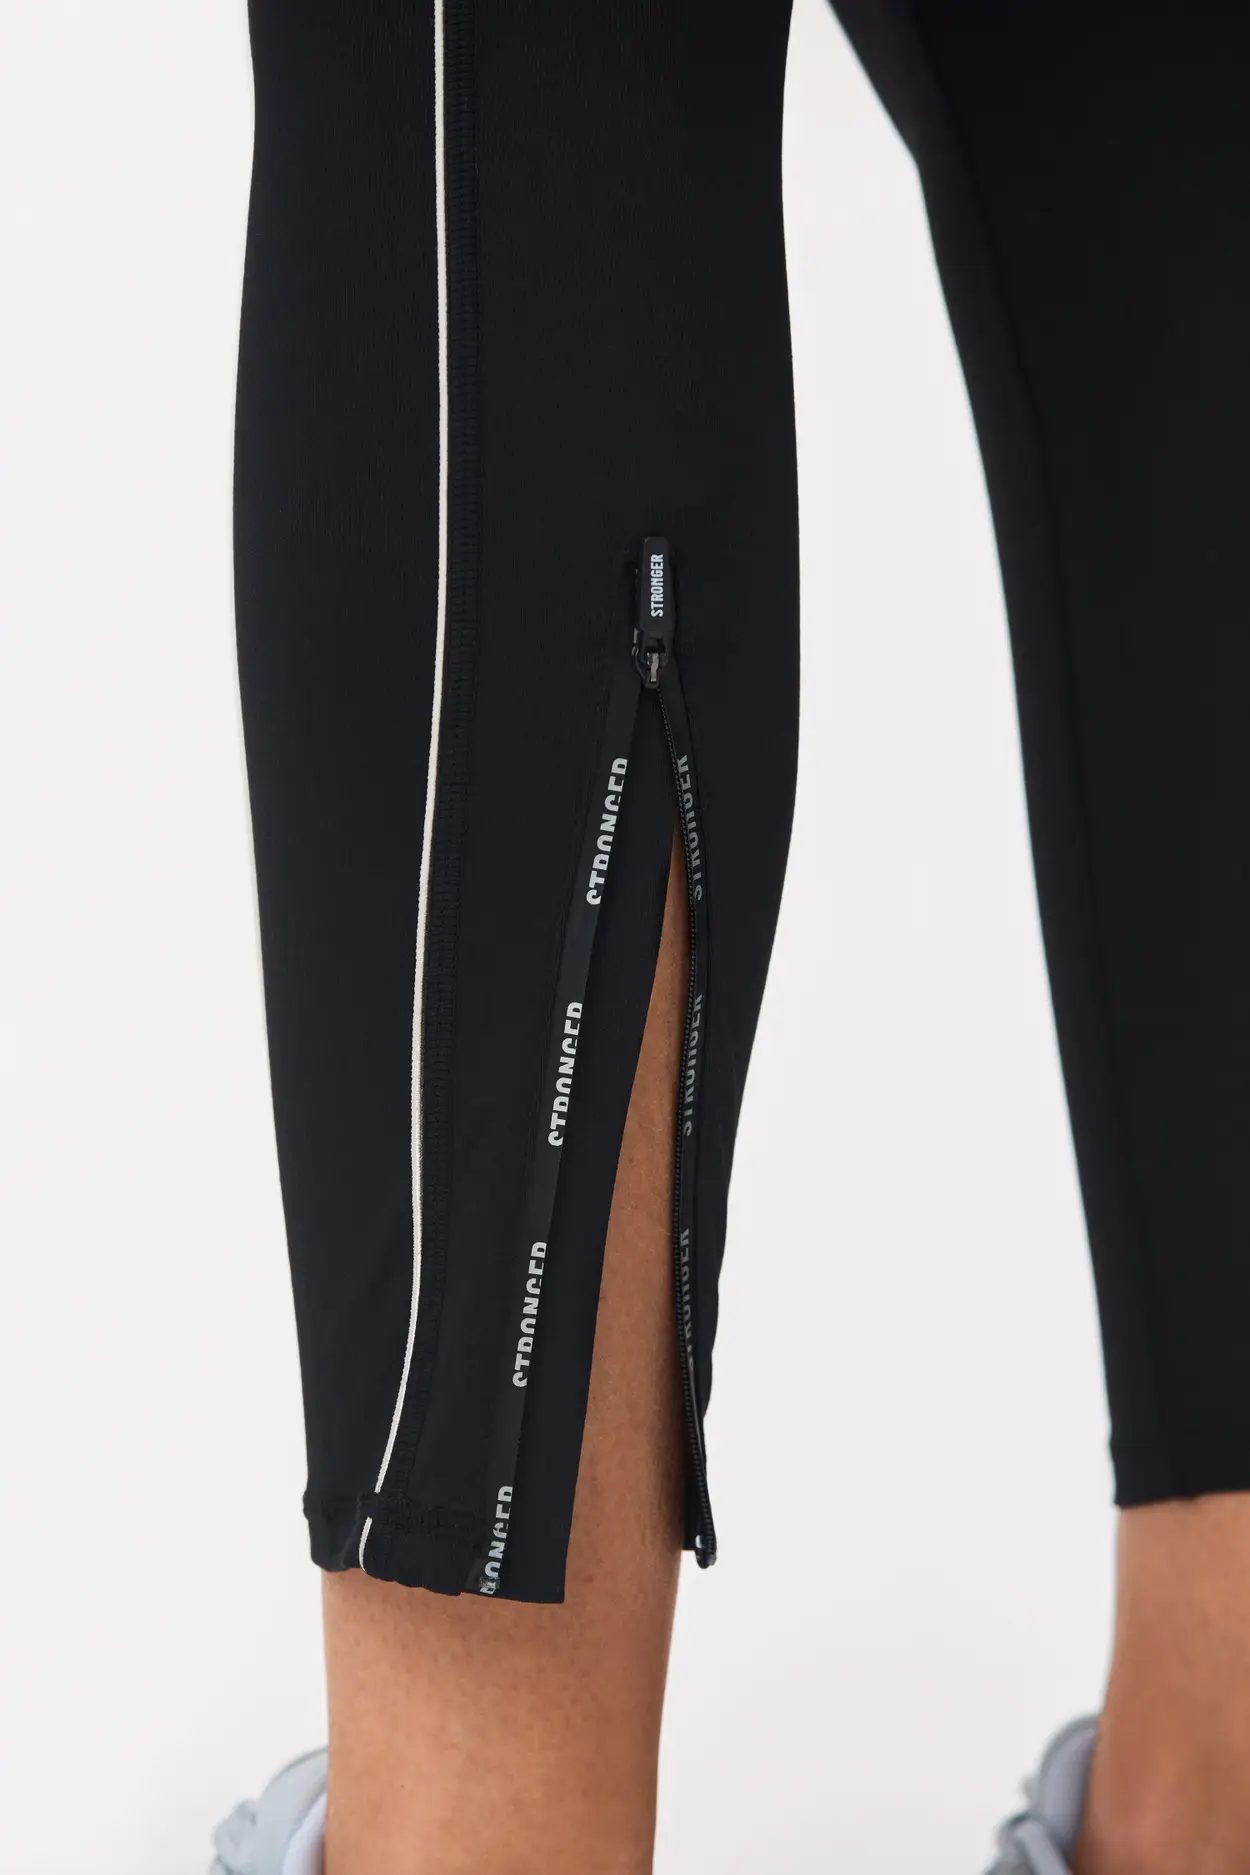 Monochrome thermal leggings in black, 6.99€ | Celestino